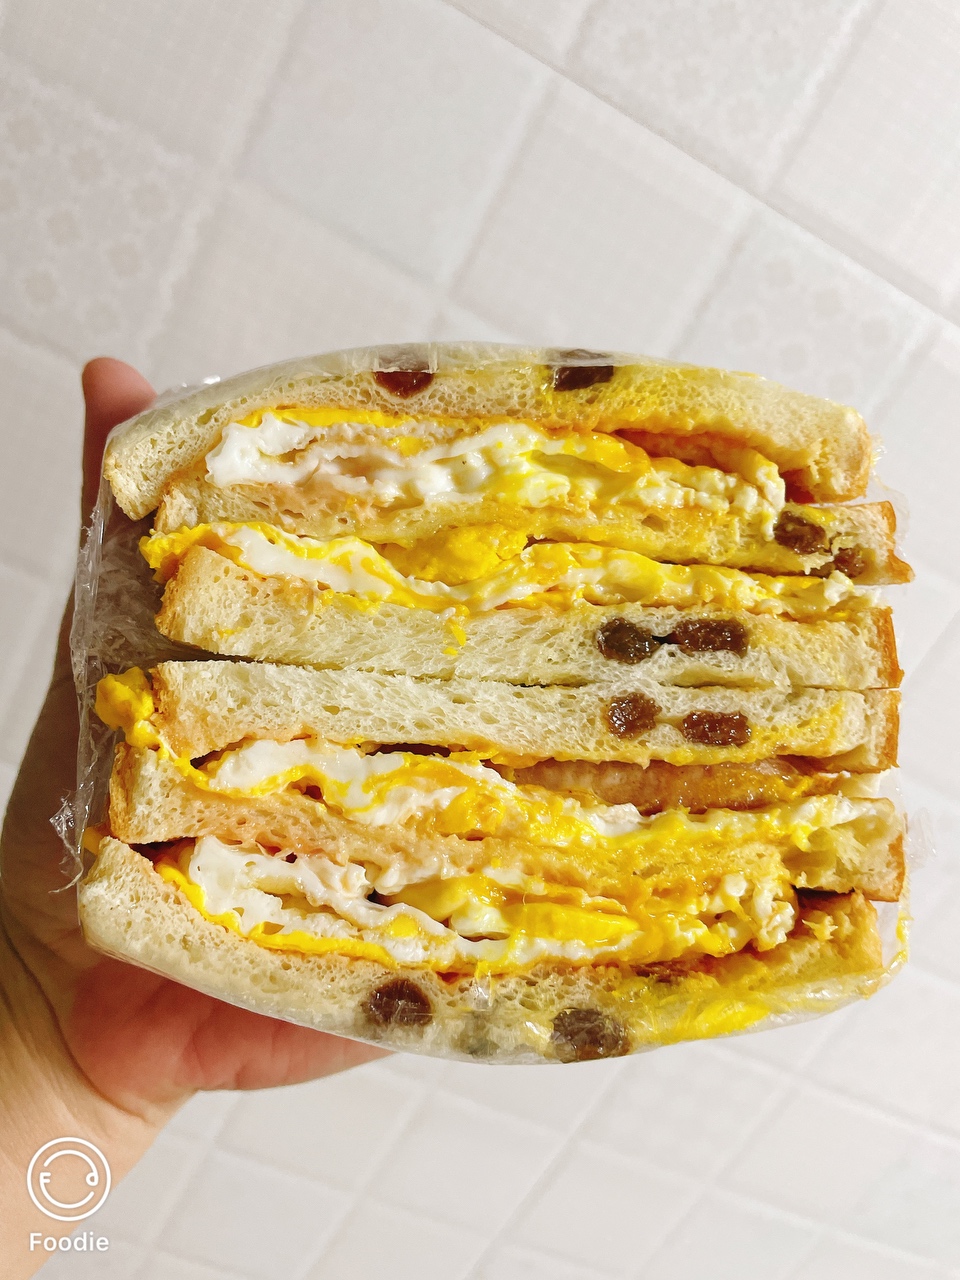 1分钟搞定营养美味早餐三明治的做法